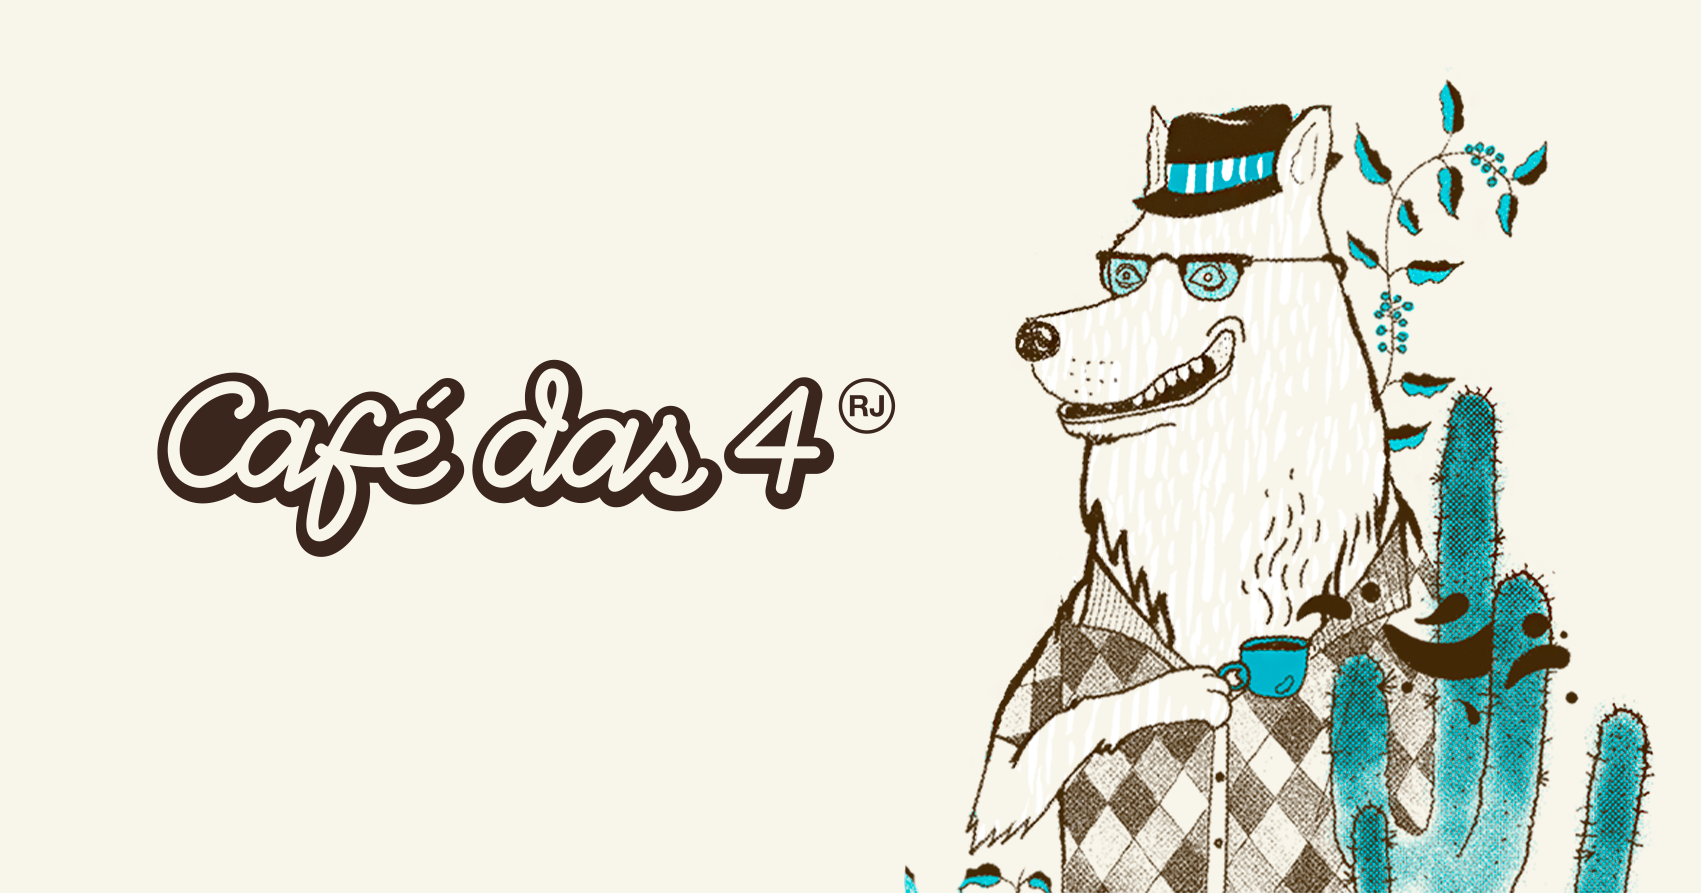 (c) Cafedas4.com